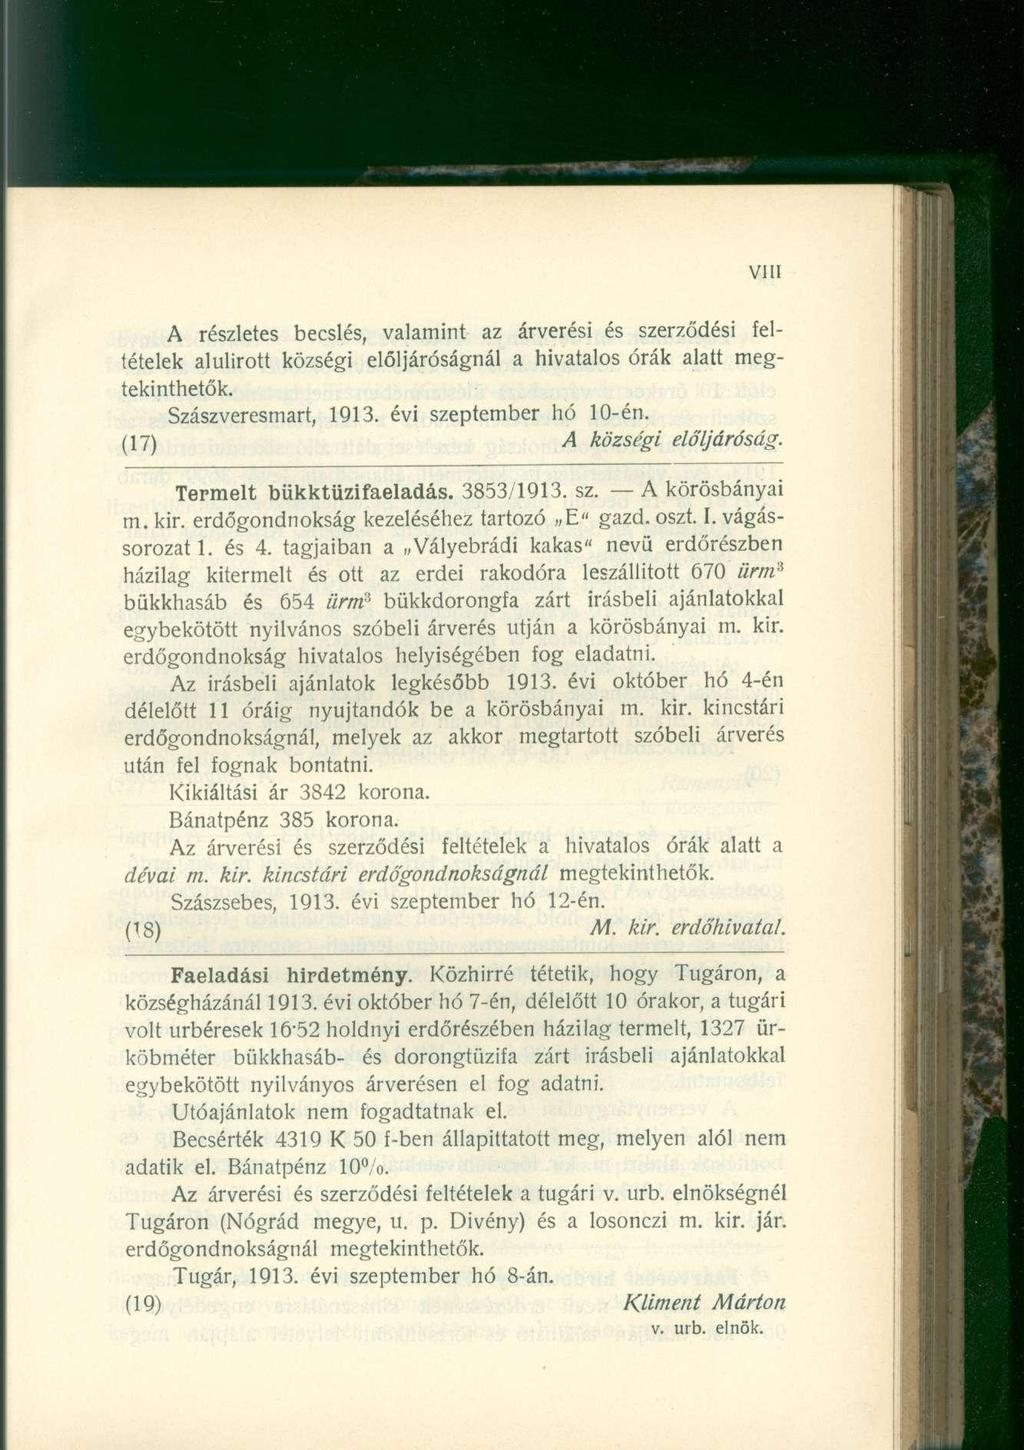 A részletes becslés, valamint az árverési és szerződési feltételek alulírott községi elöljáróságnál a hivatalos órák alatt megtekinthetők. Szászveresmart, 1913. évi szeptember hó 10-én.